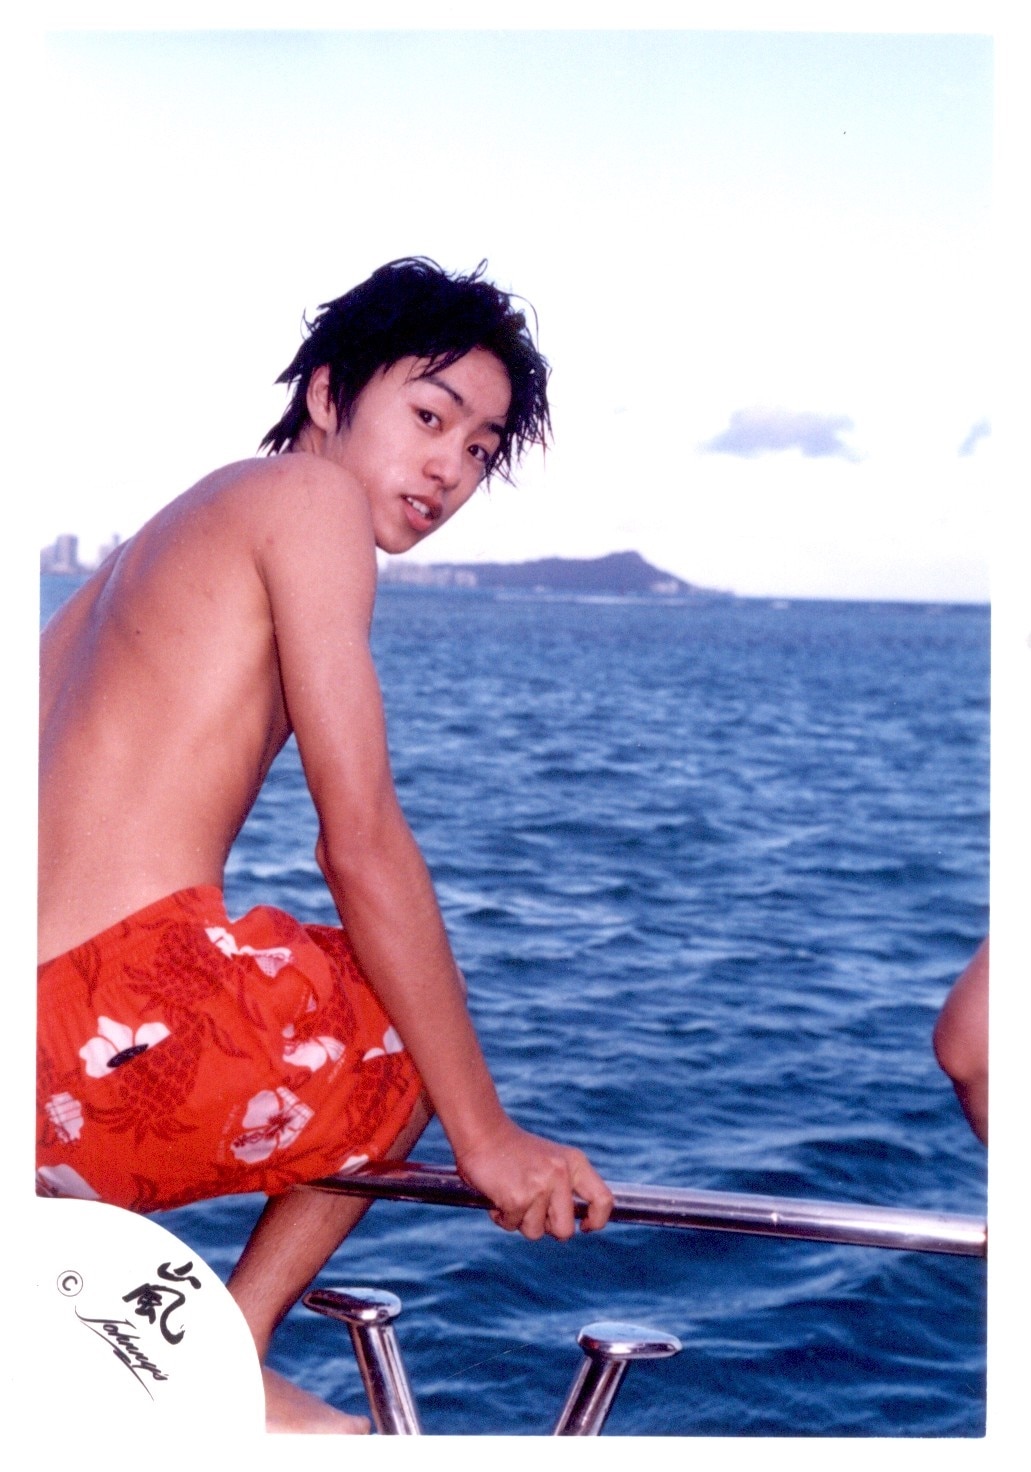 嵐 櫻井翔 公式写真 2002〜2006 ハワイ、the showなど - アイドル